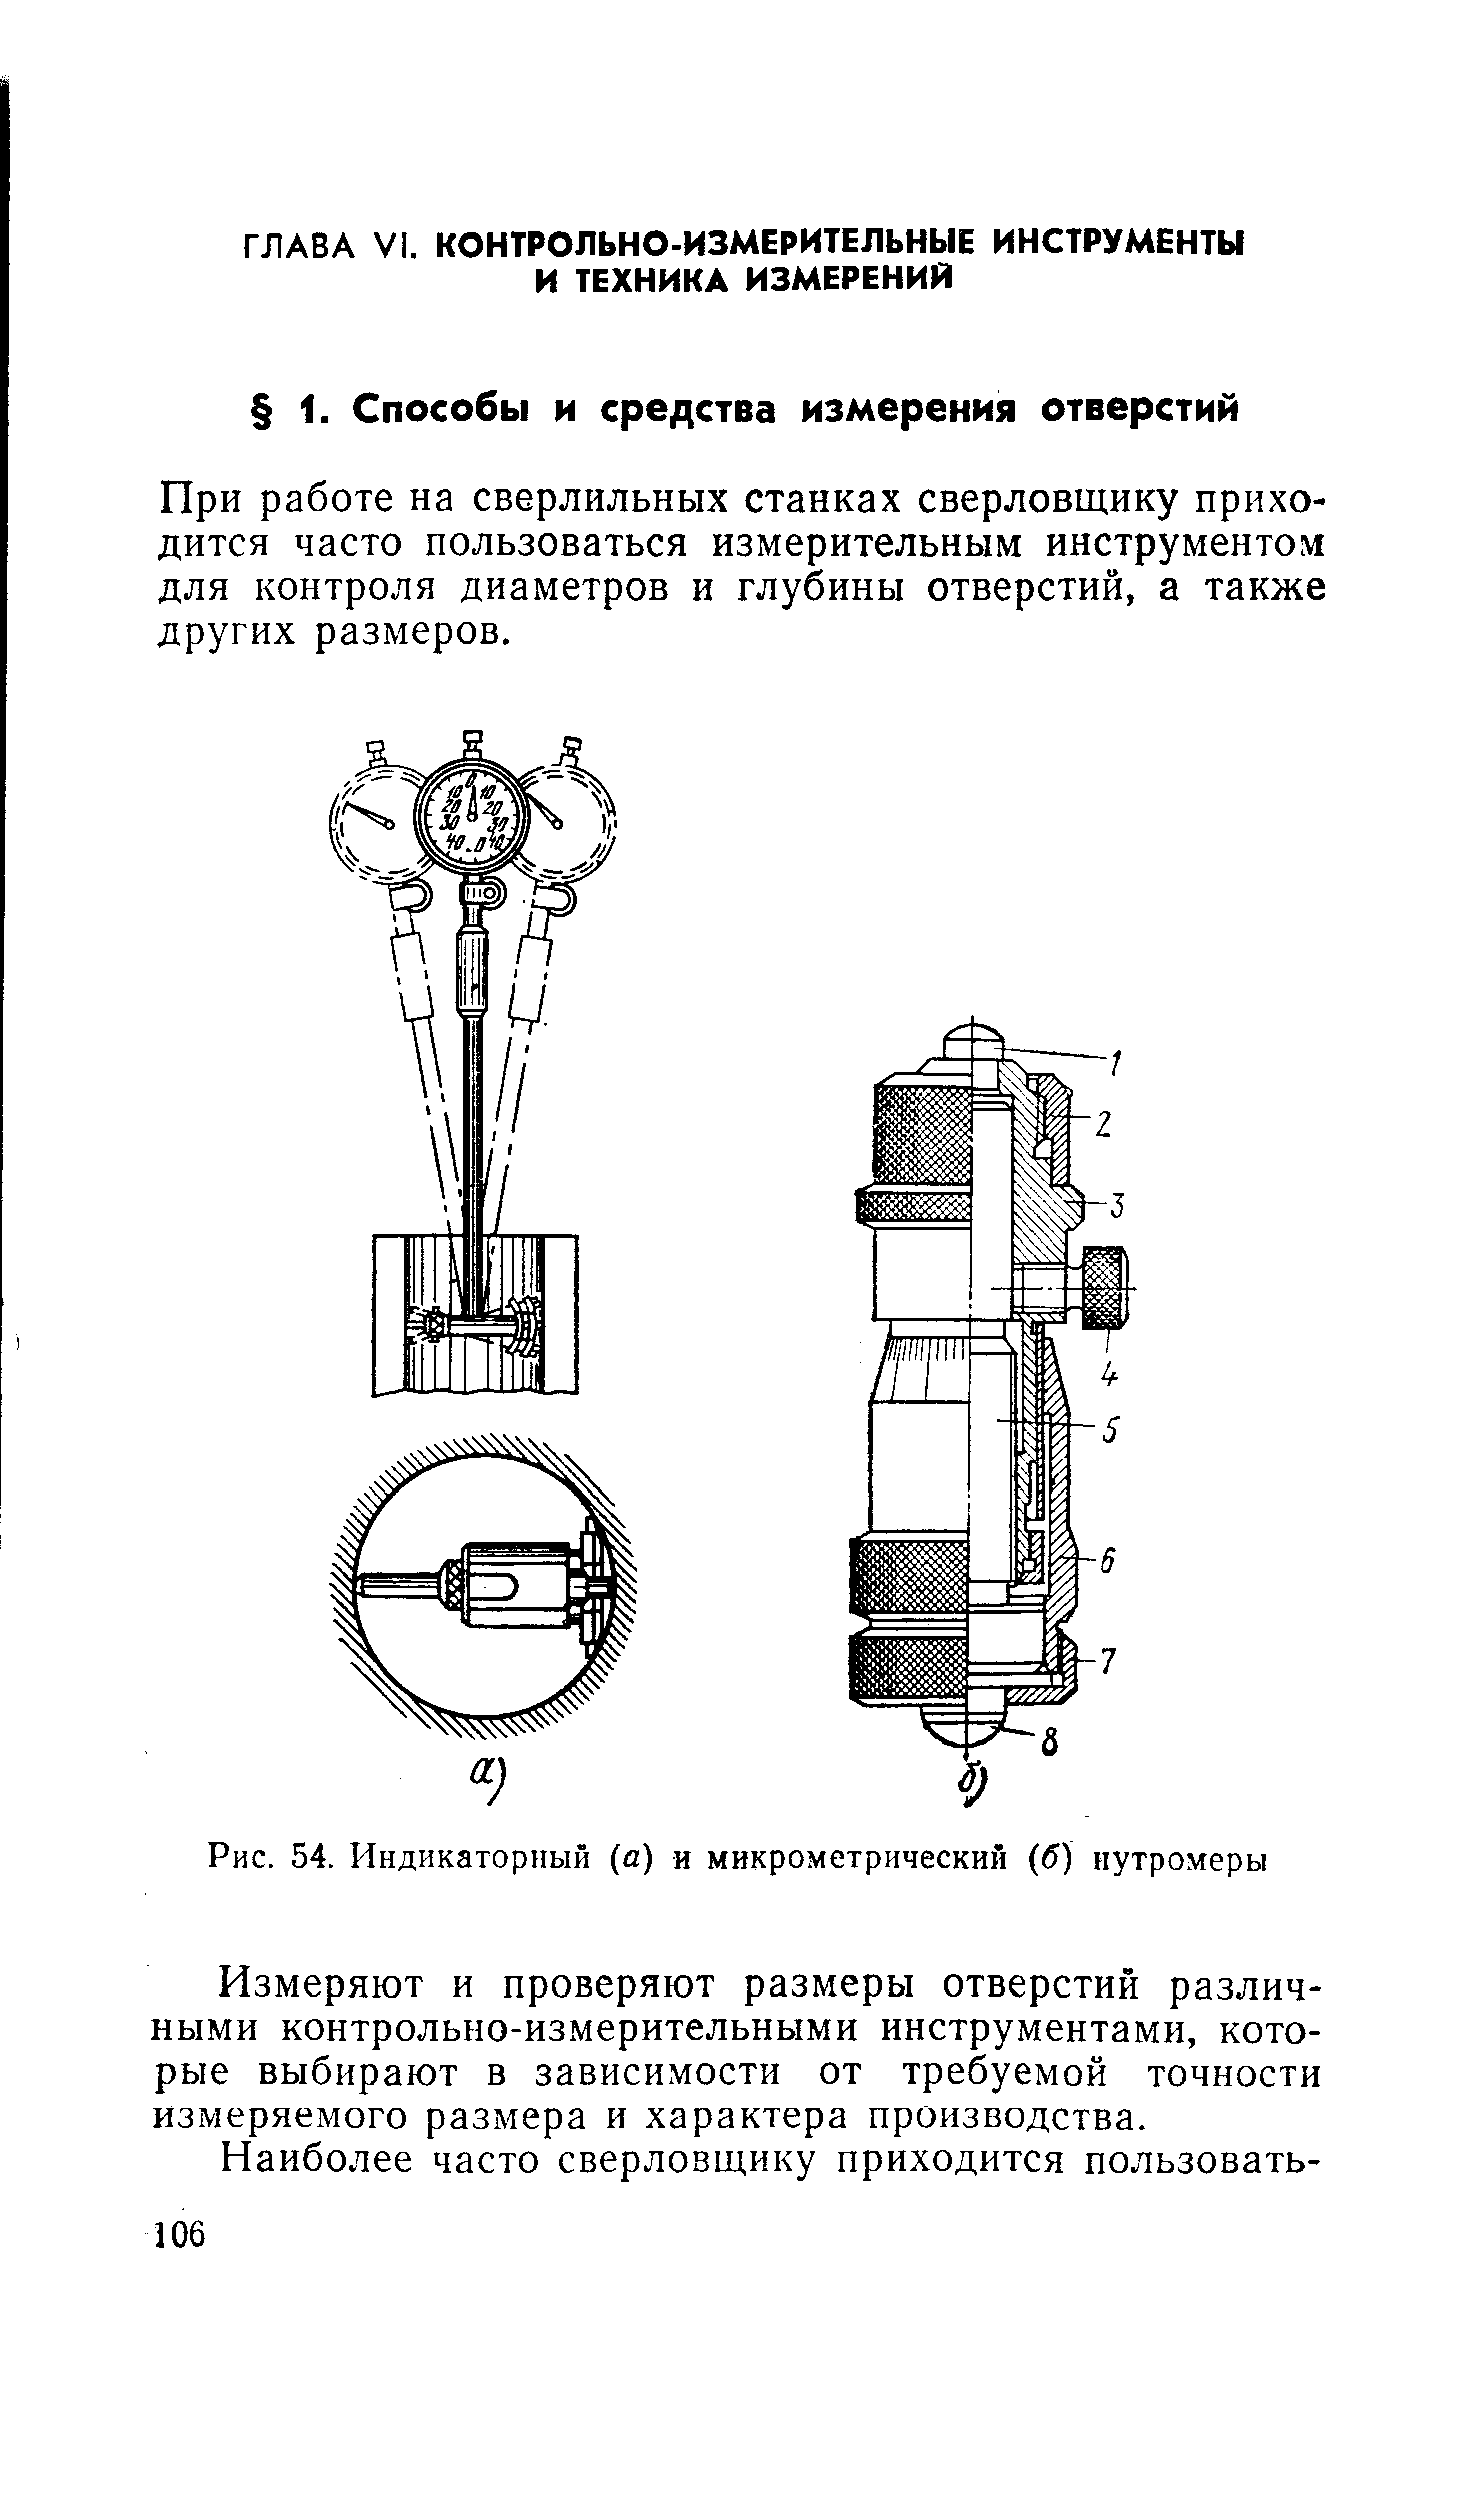 Рис. 54. Индикаторный (а) и микрометрический (б) нутромеры
